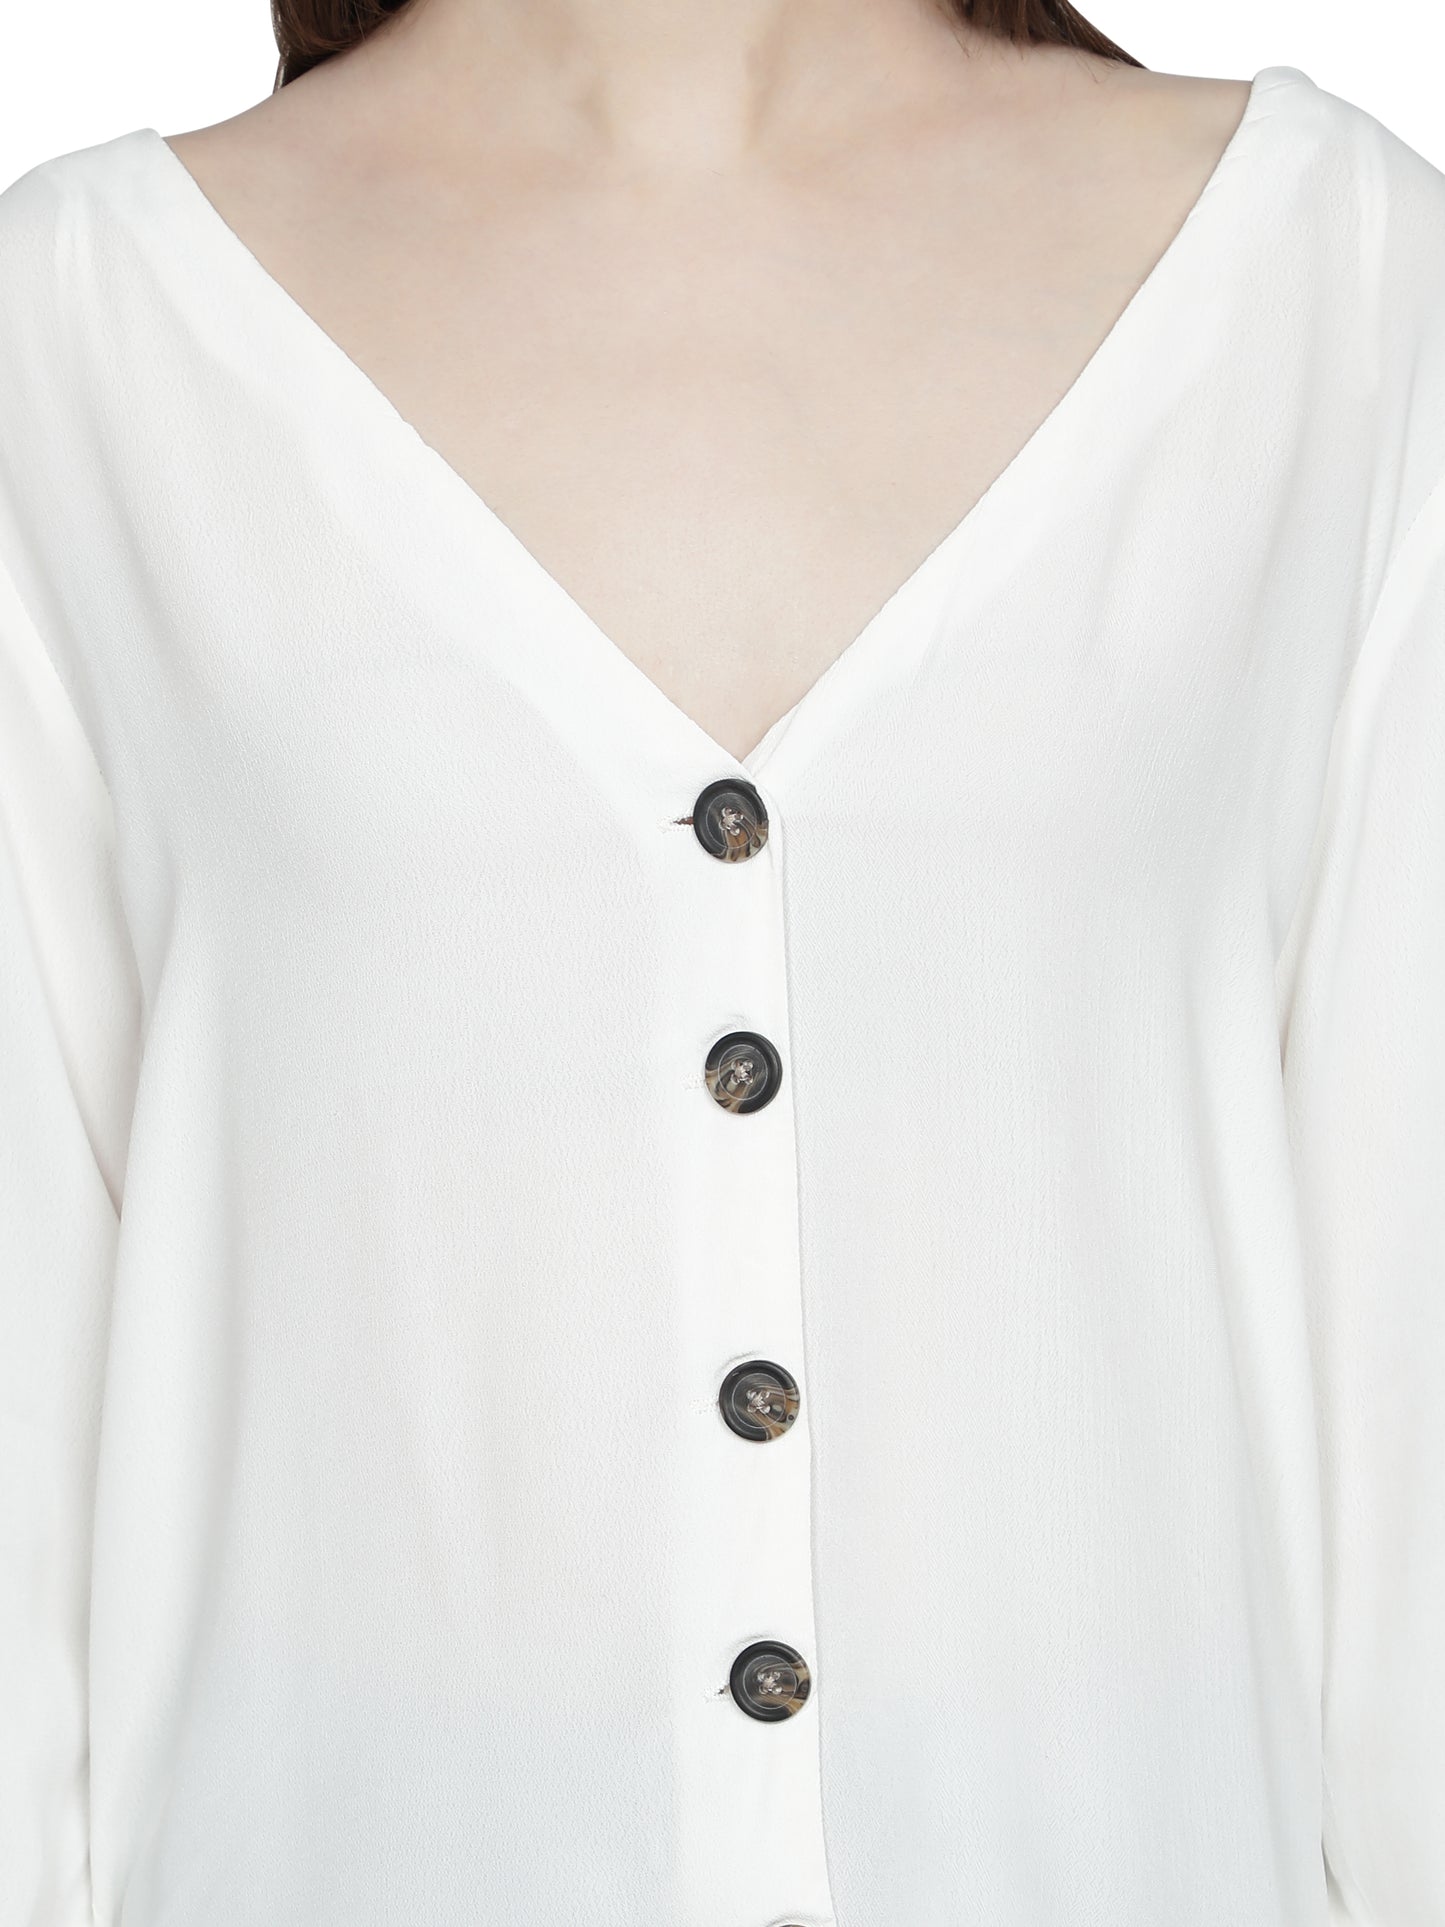 NUEVOSDAMAS Women Rayon Solid White Shirt Top